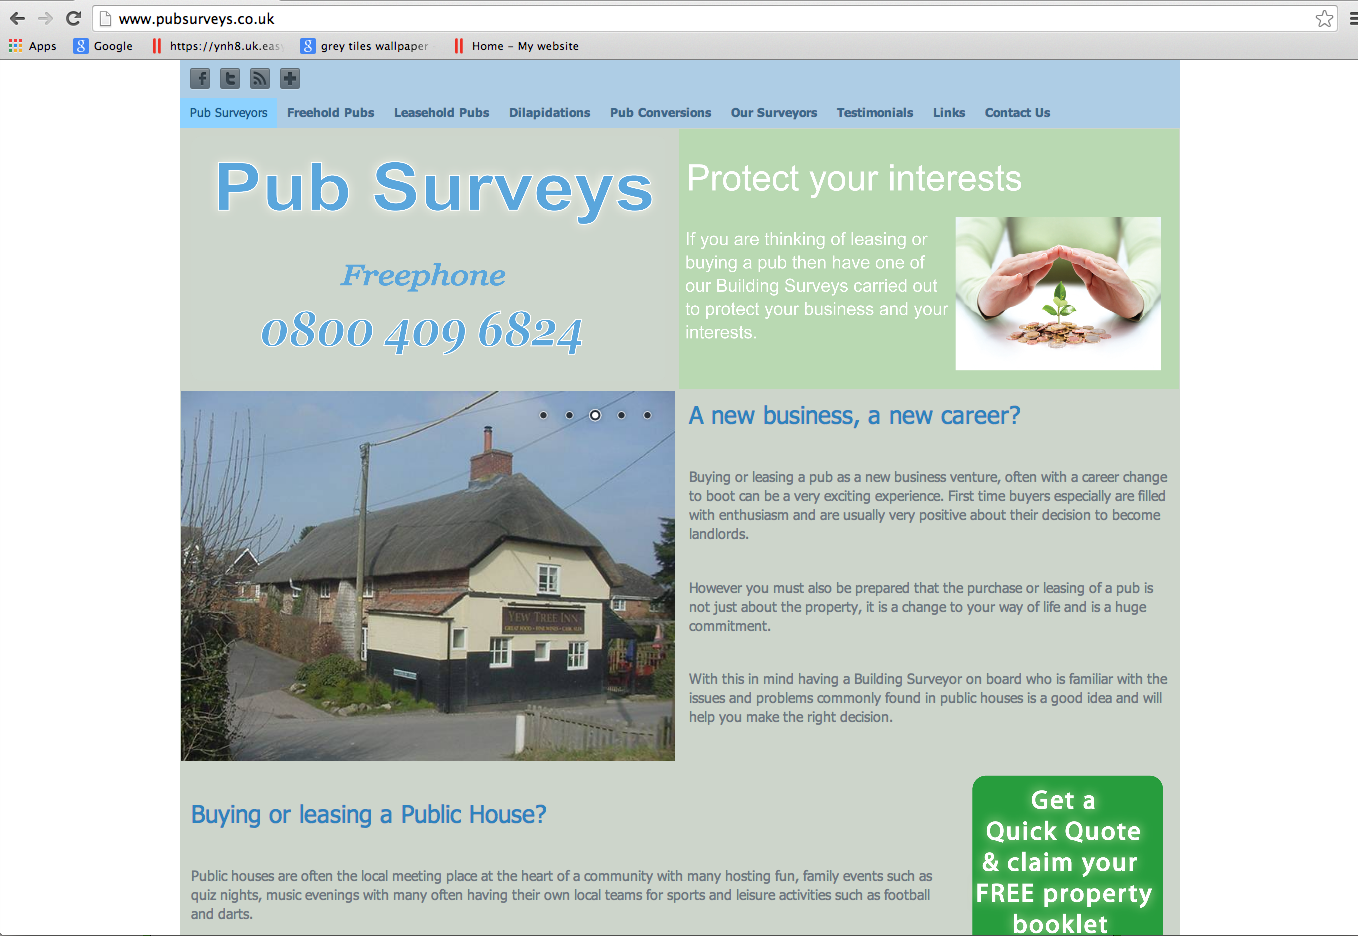 Website Brief - pubsurveys.co.uk